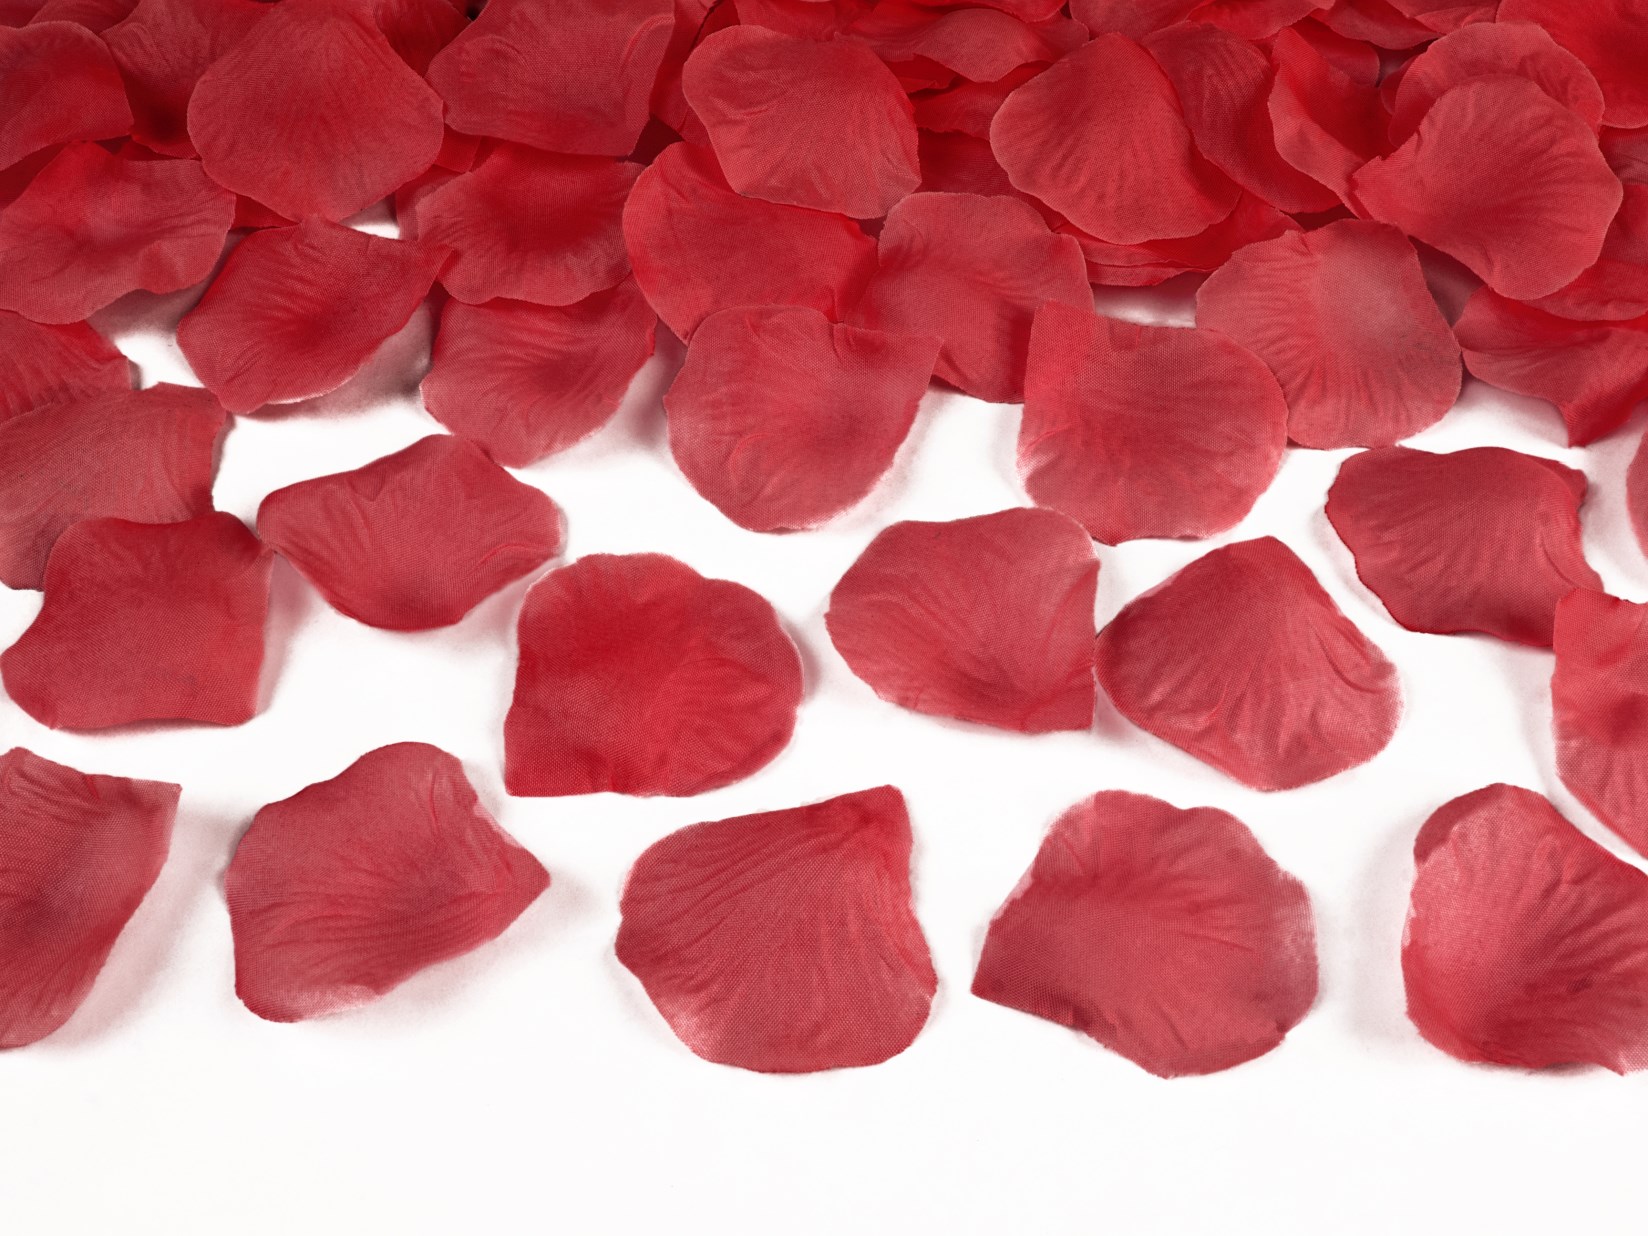 Υφασμάτινα Κόκκινα Ροδοπέταλα – 500 Τεμάχια